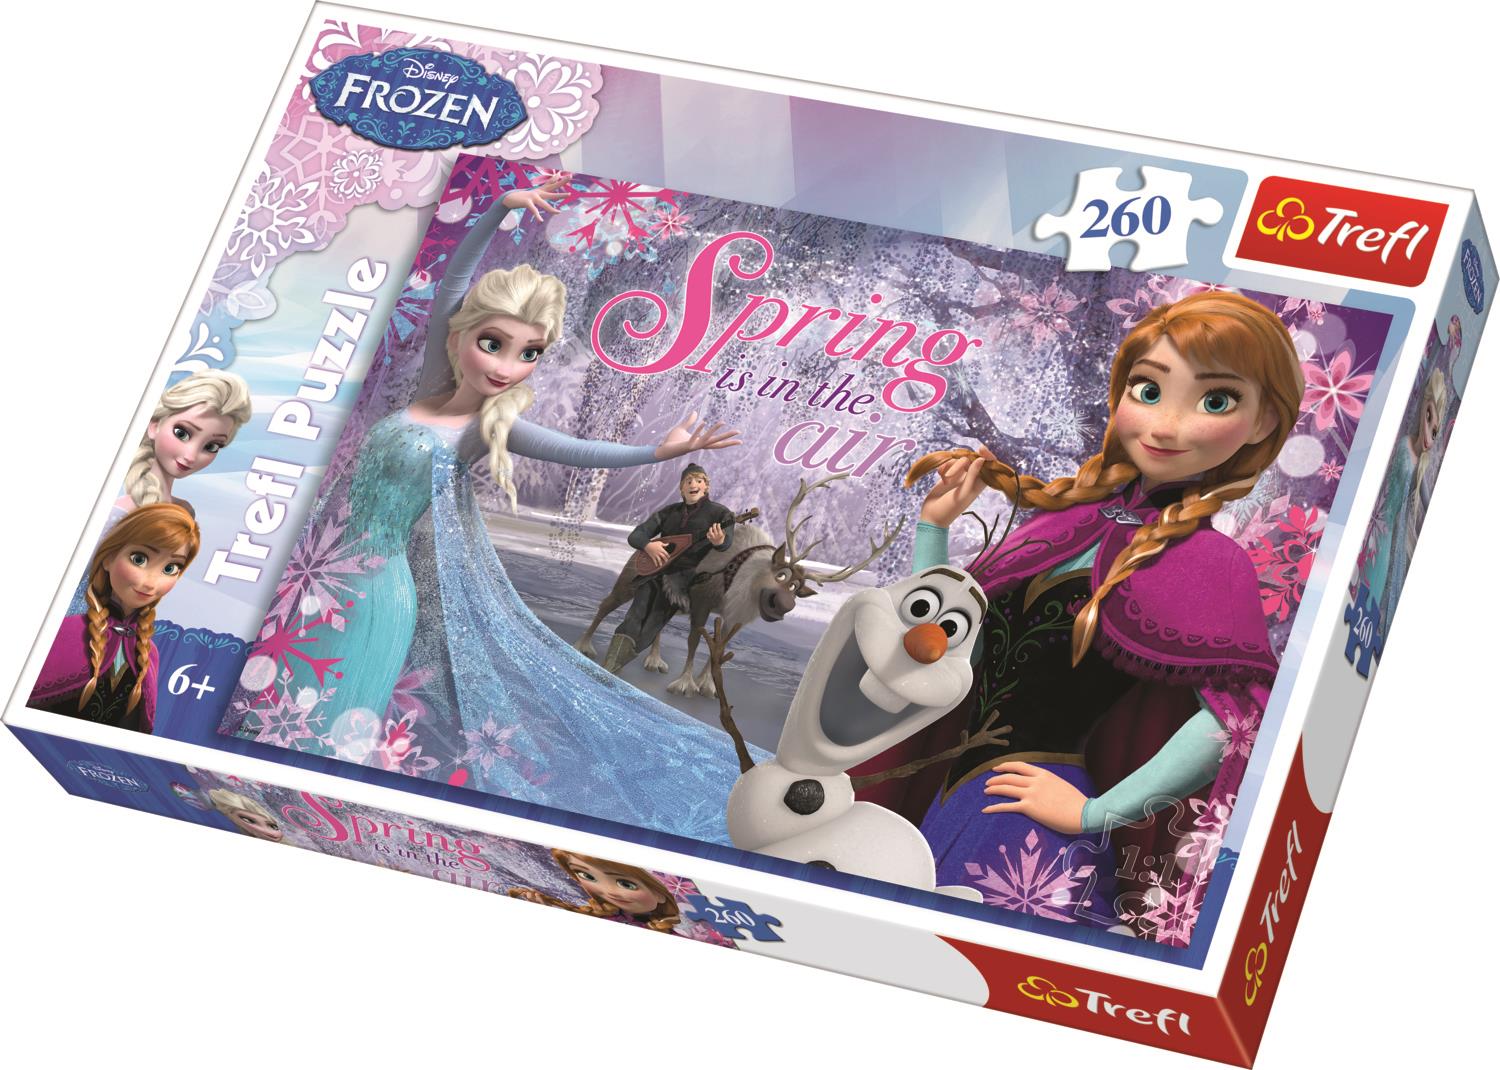 Trefl Çocuk Puzzle 13195 Frozen Love Of The Frozen Land, Disney 260 Parça Puzzle